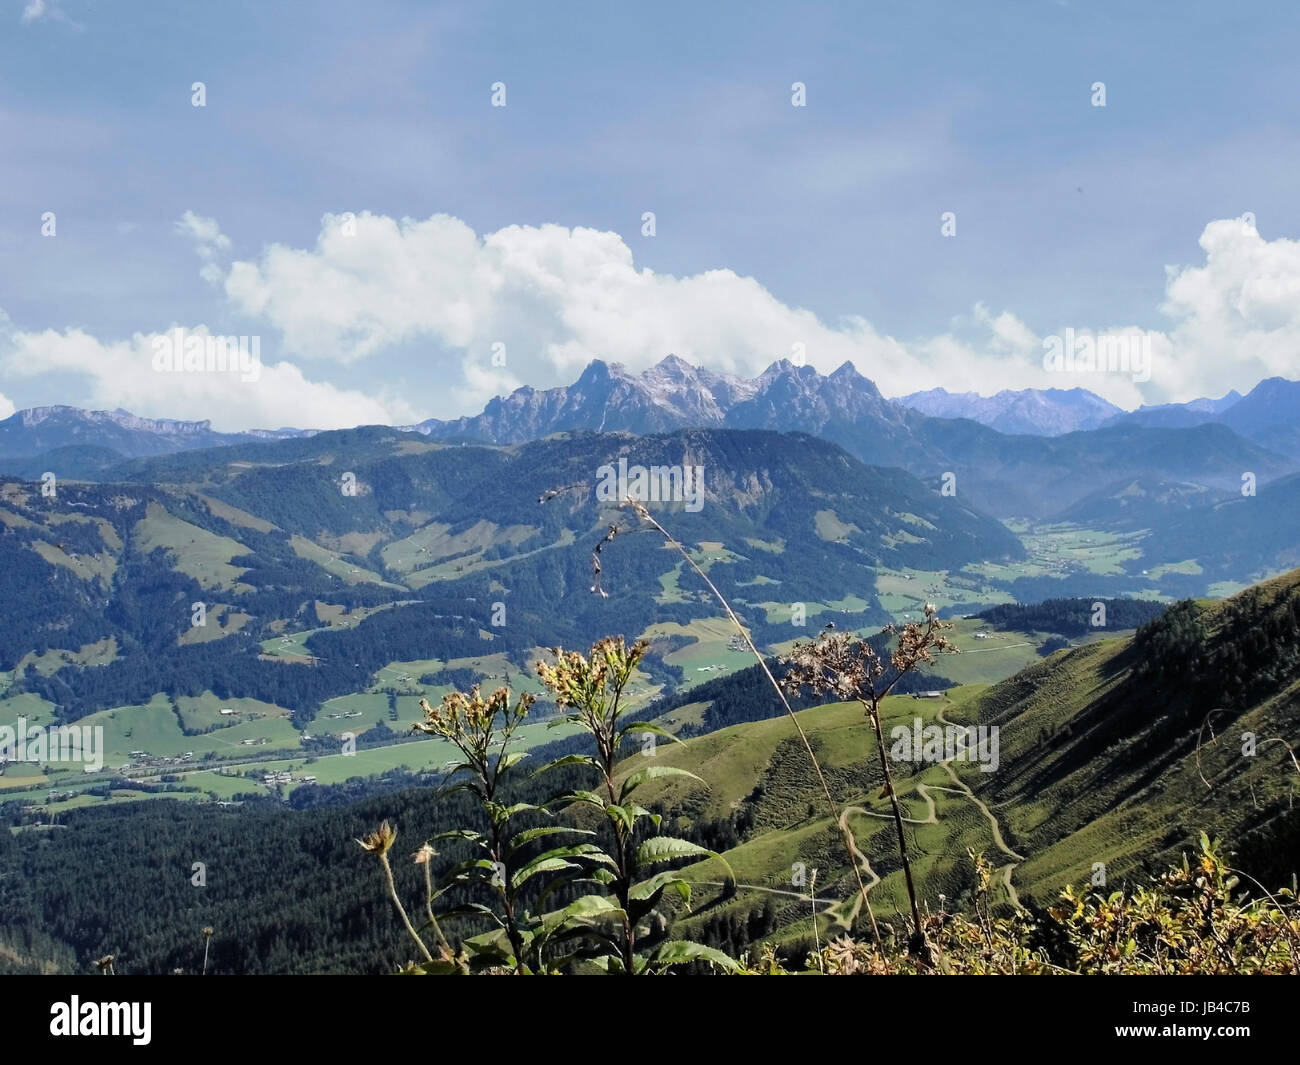 Blick auf die Gipfel des Kaisergebirges in Tirol, Oesterreich; Berge und  Täler, Wälder und Wiesen; sonniger Tag im Herbst View on the peaks of the  Kaiser Mountains in Tyrol, Austria; mountains and